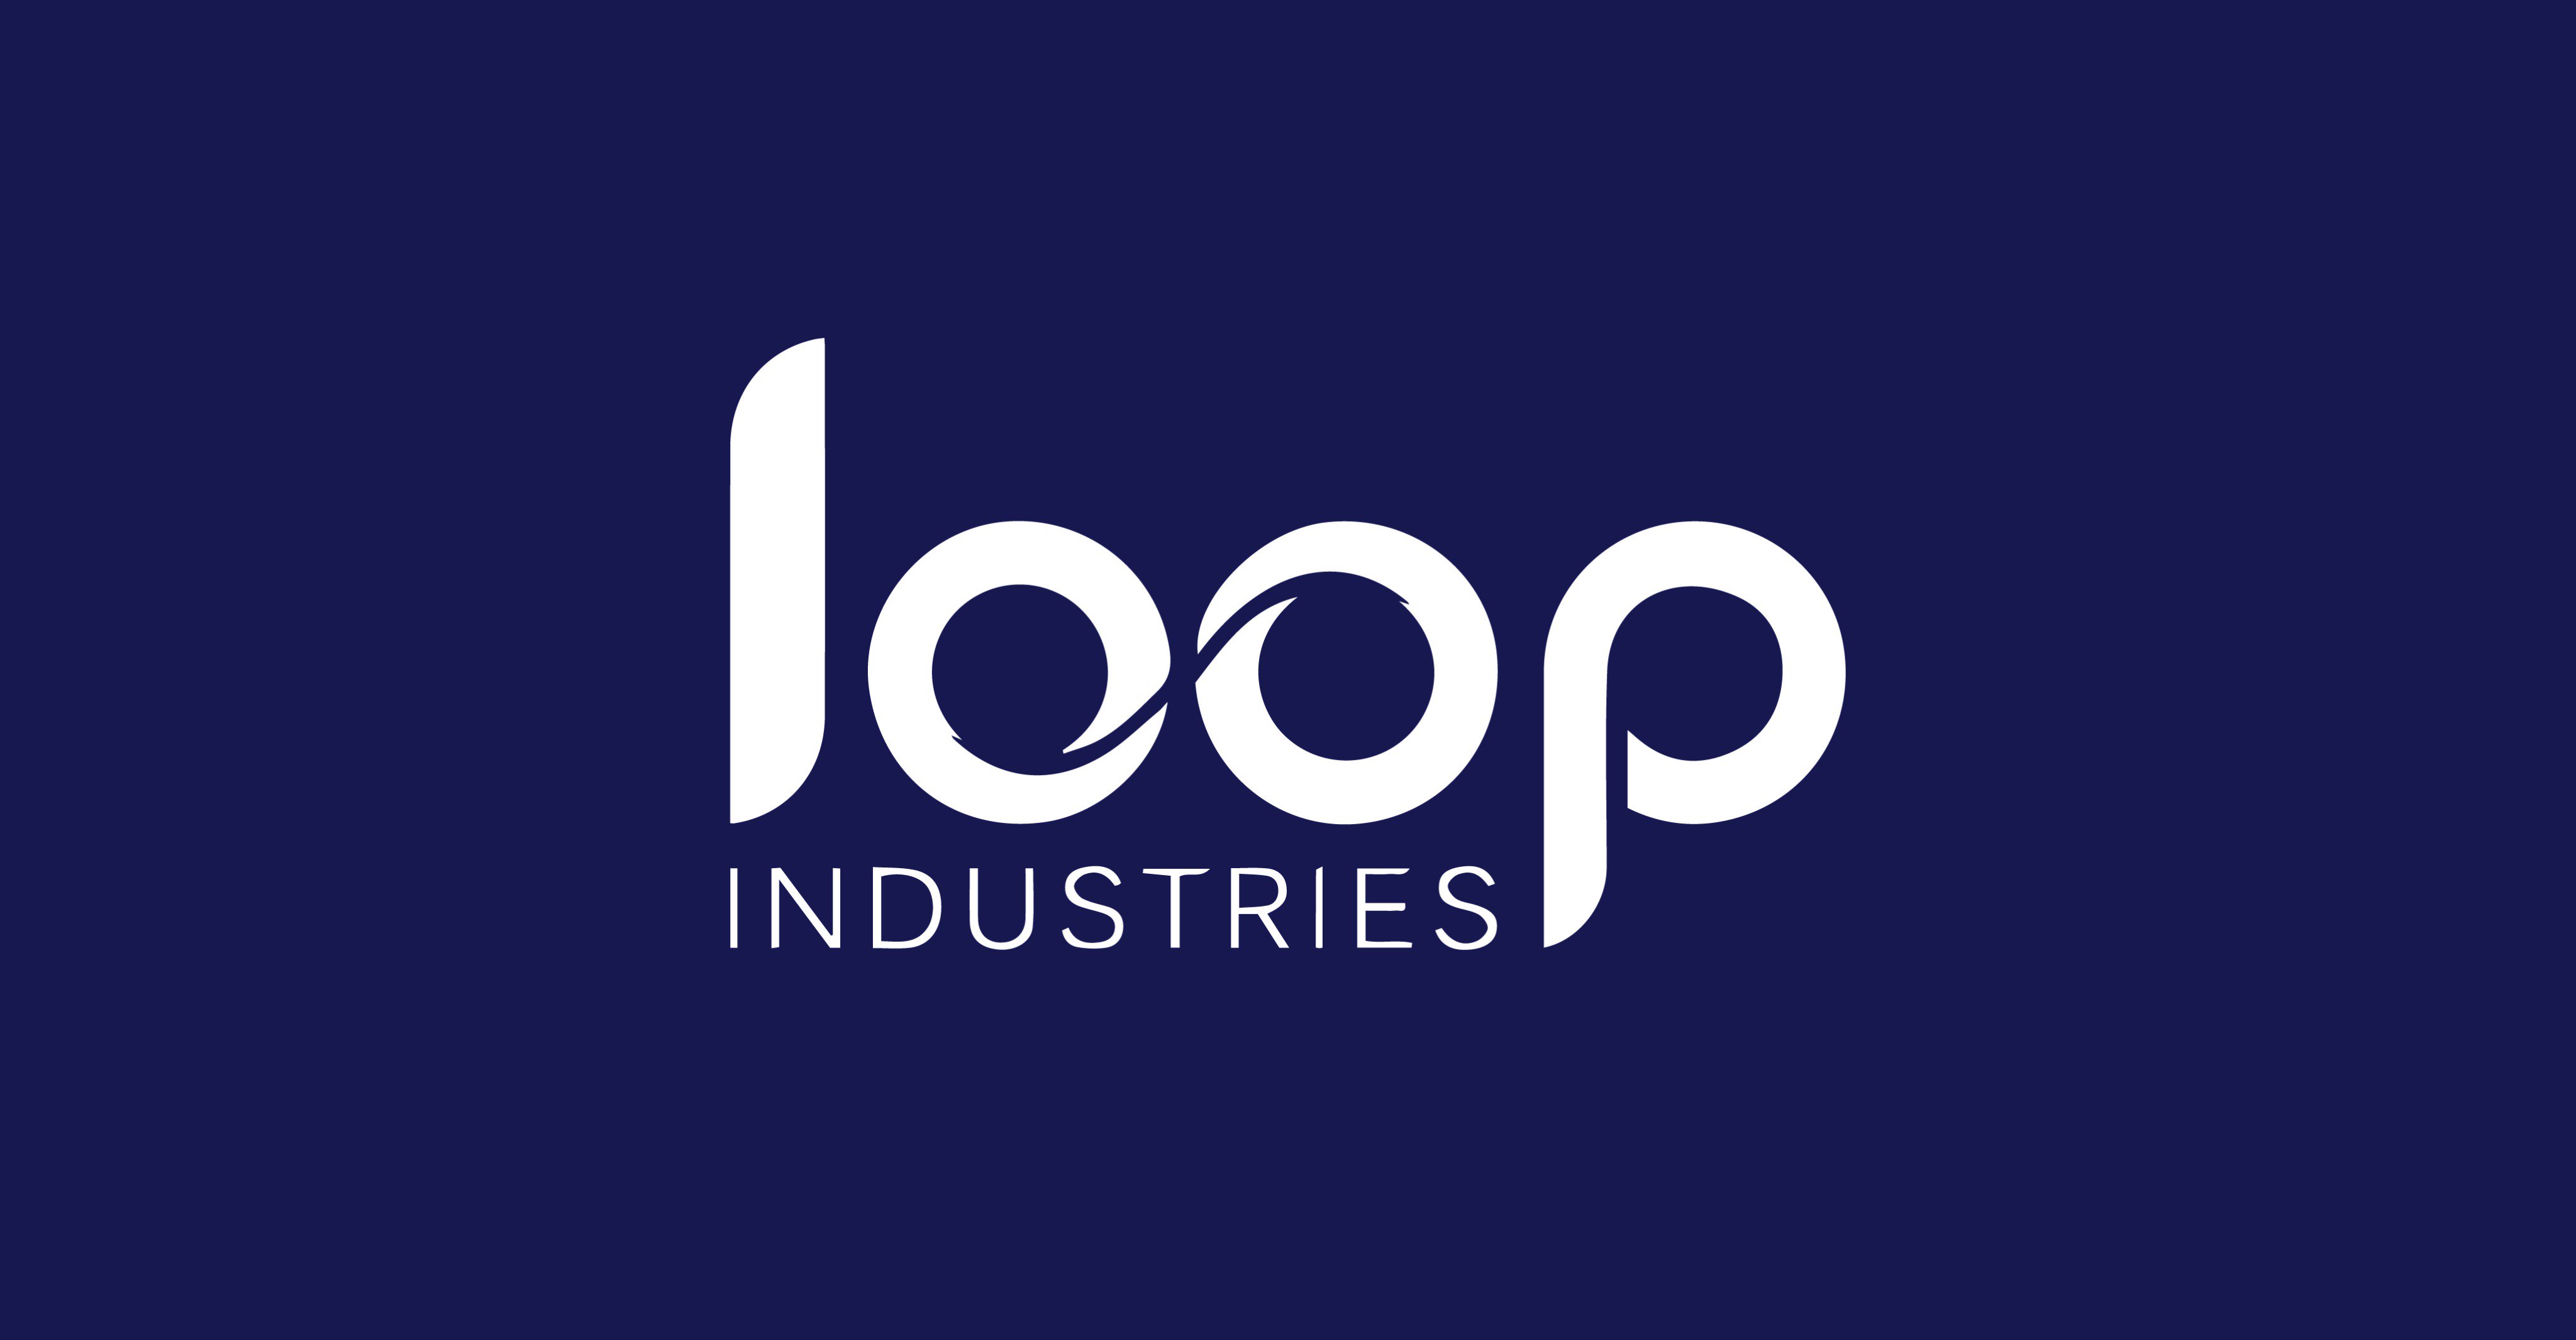 Loop industries